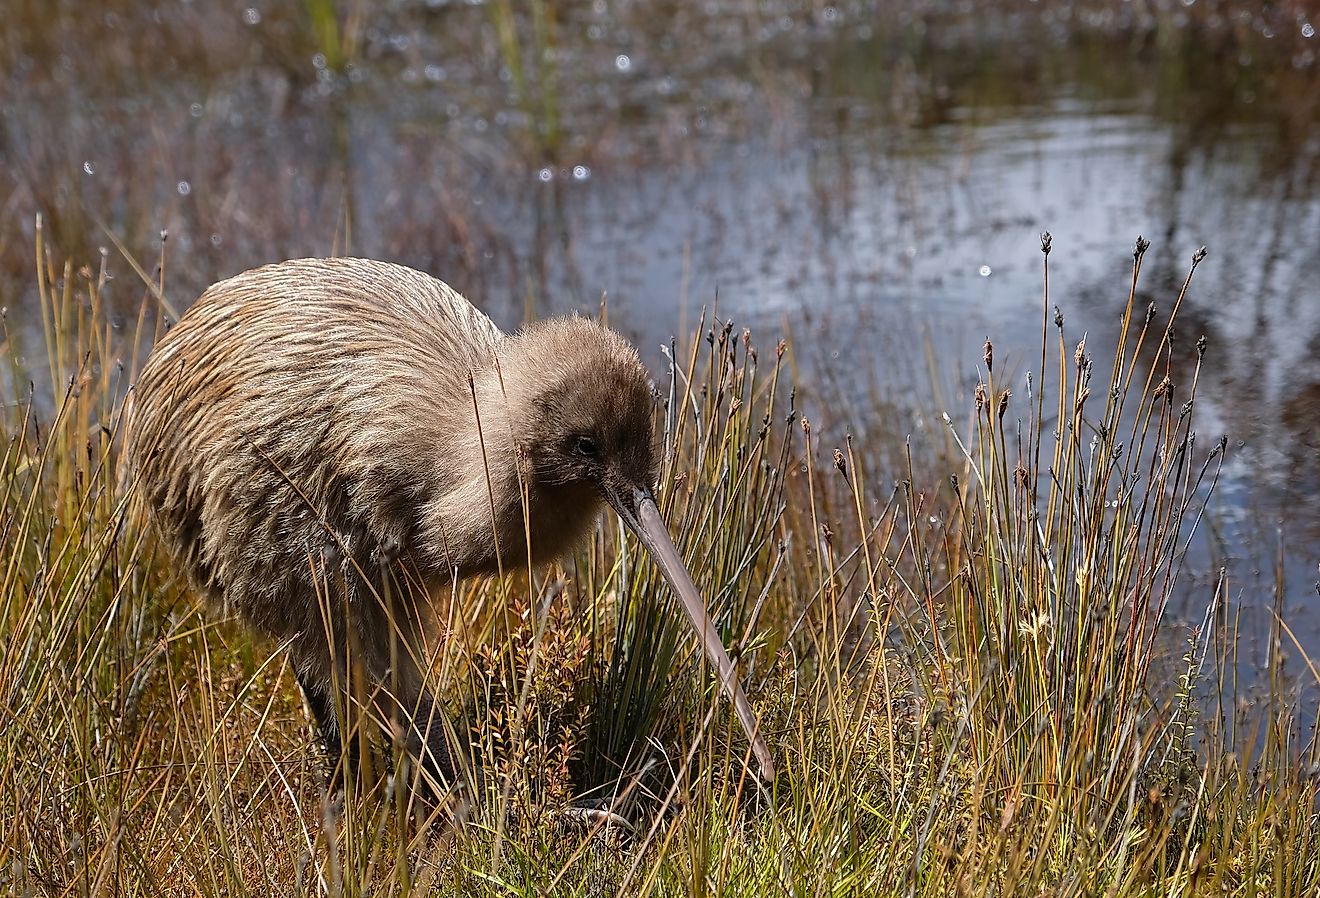 The 5 Species Of Kiwis Of New Zealand - WorldAtlas